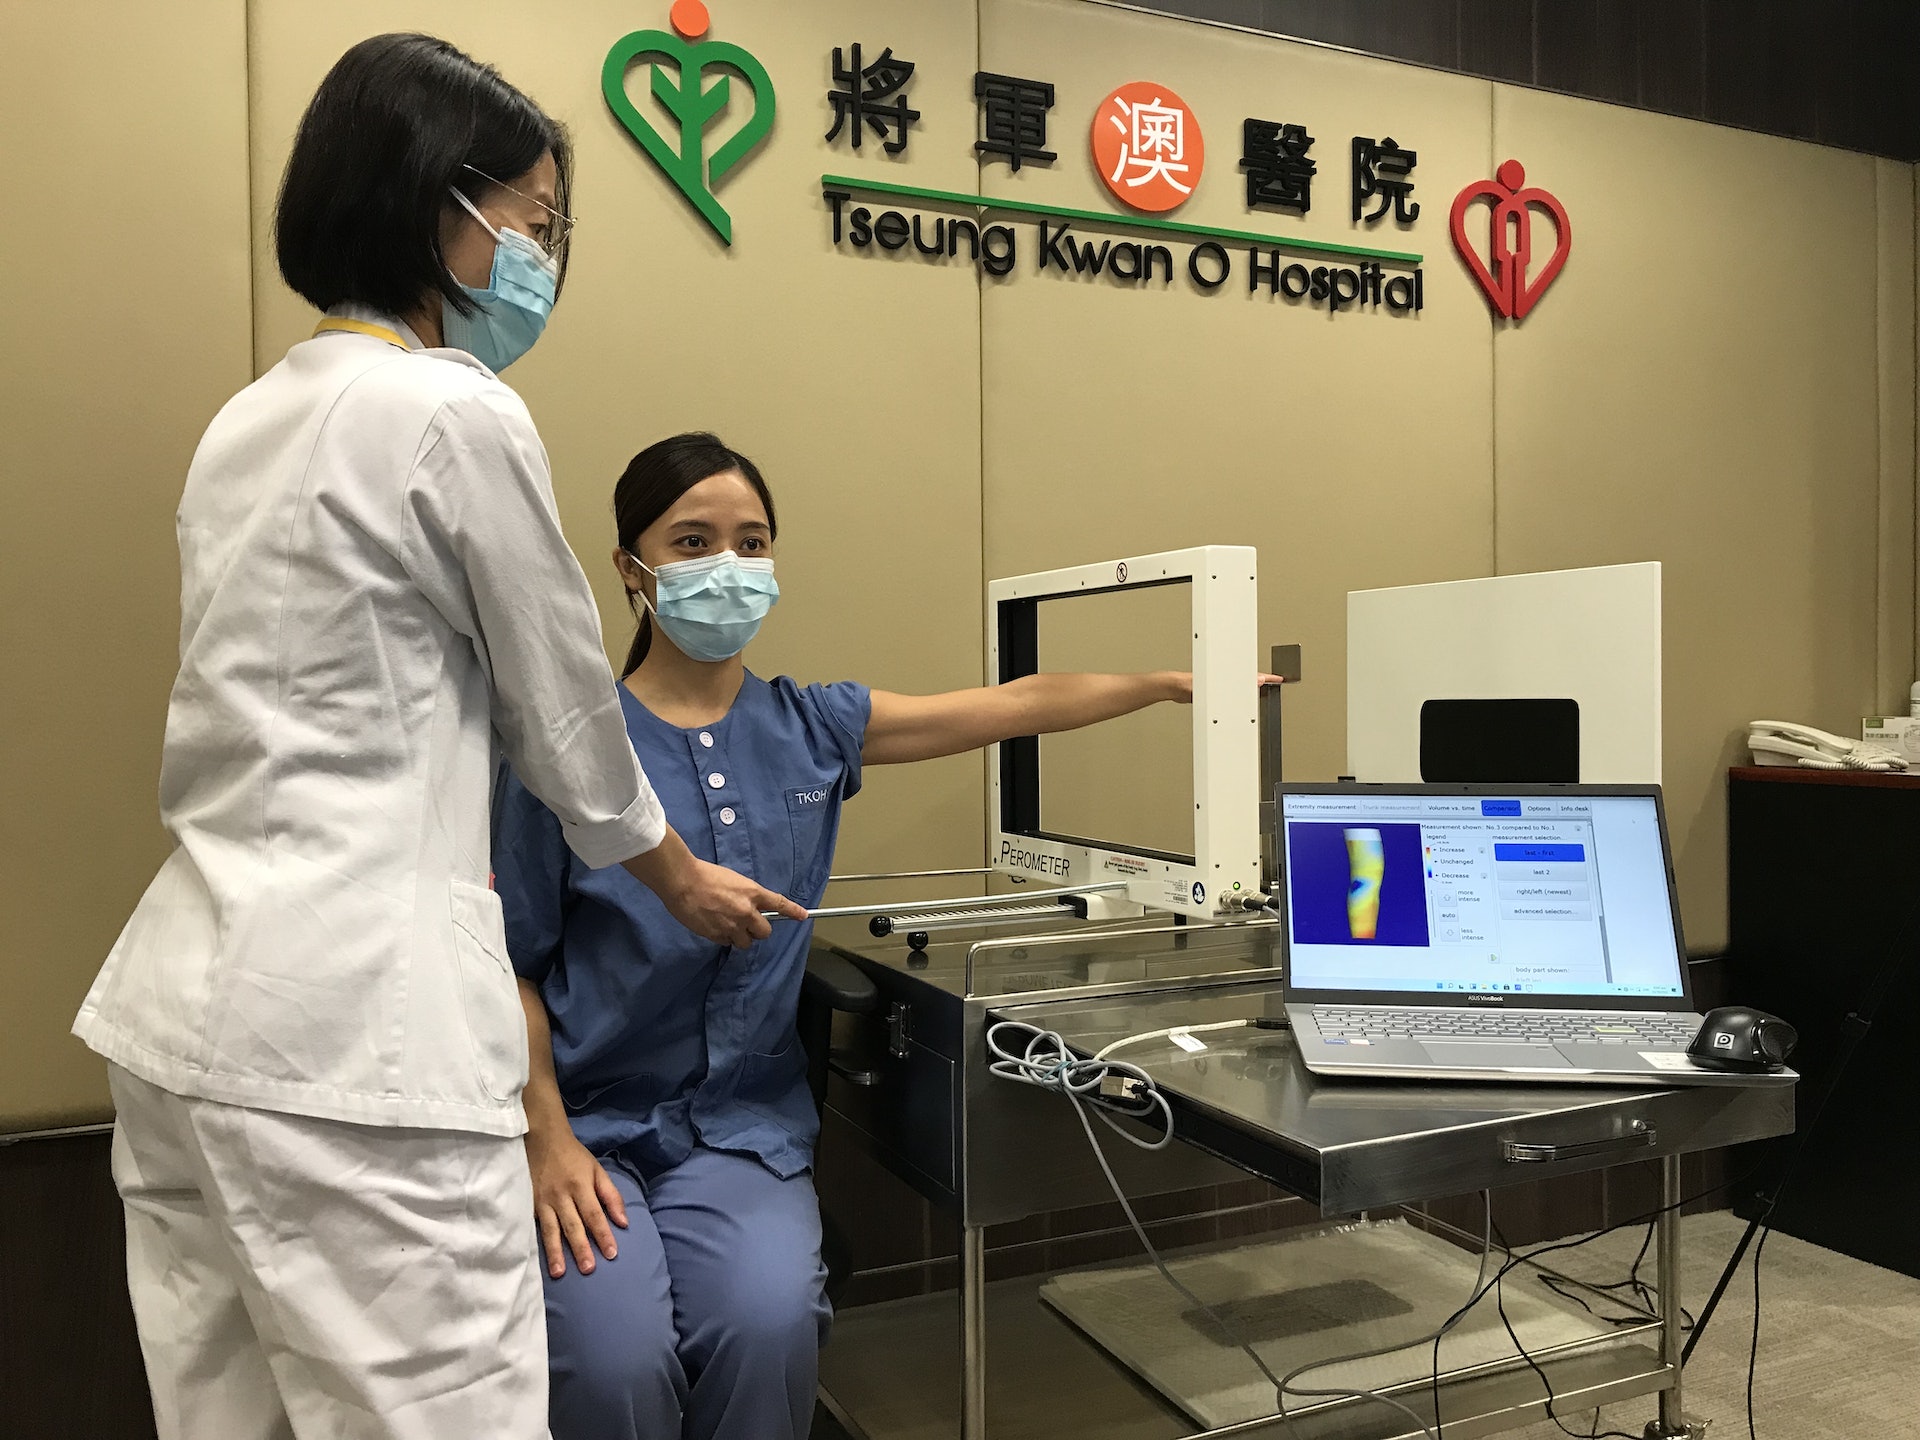 蔡惠榮與另一名護士，用紅外線三維測量儀檢查病人。可見醫護可拉動一方形的掃瞄器，如「影印機」掃過病人手臂。(梁晉穎攝)